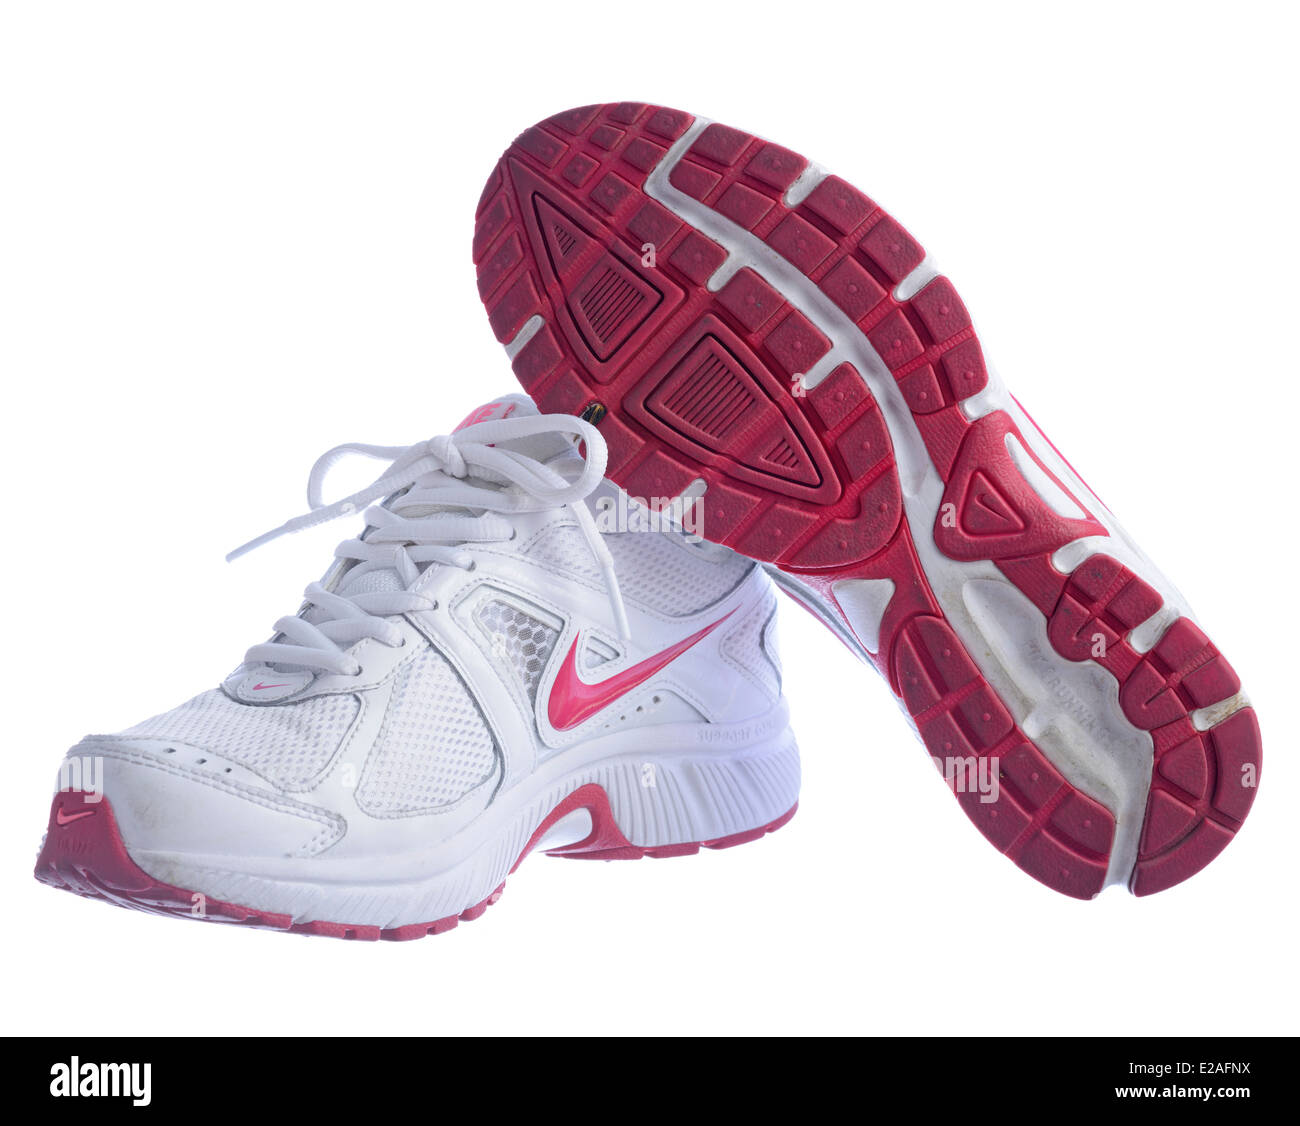 Nike Dart 9 blanc chaussures de course isolé sur fond blanc Photo Stock -  Alamy